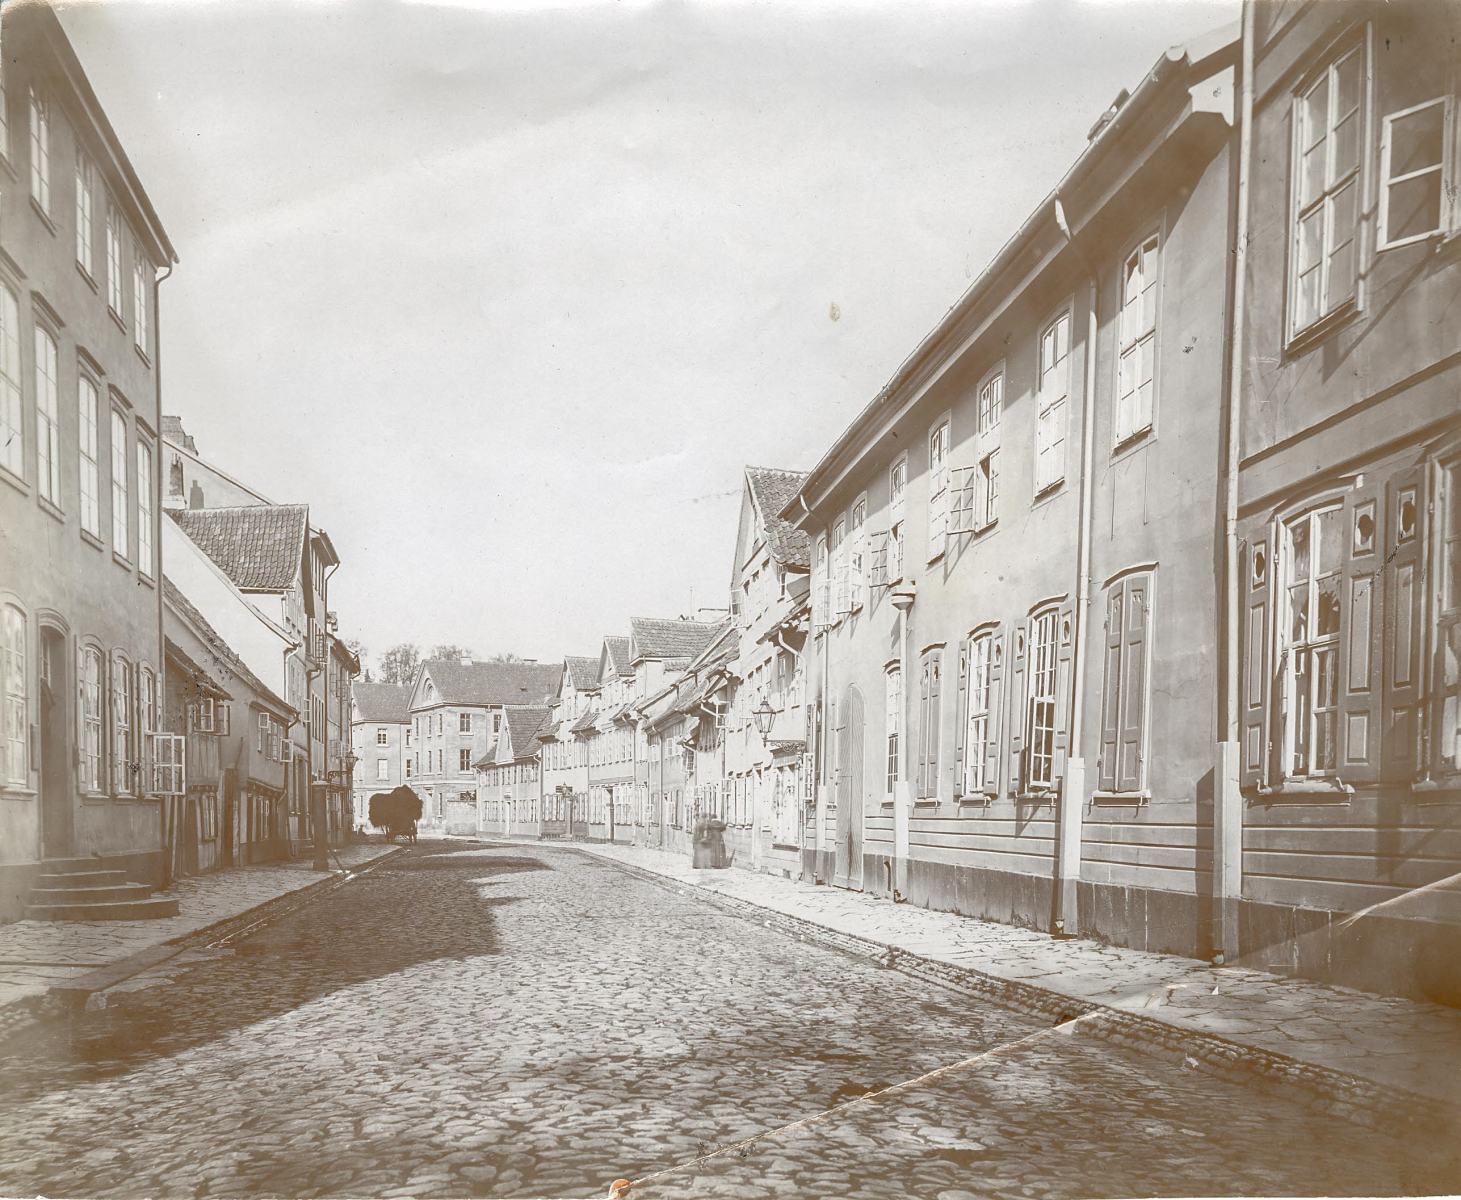 Obere-Maschstraße-Gesamtansicht-004-Ostseite-von-der-Allee-aus-gesehen-Agust-1924_edited-1